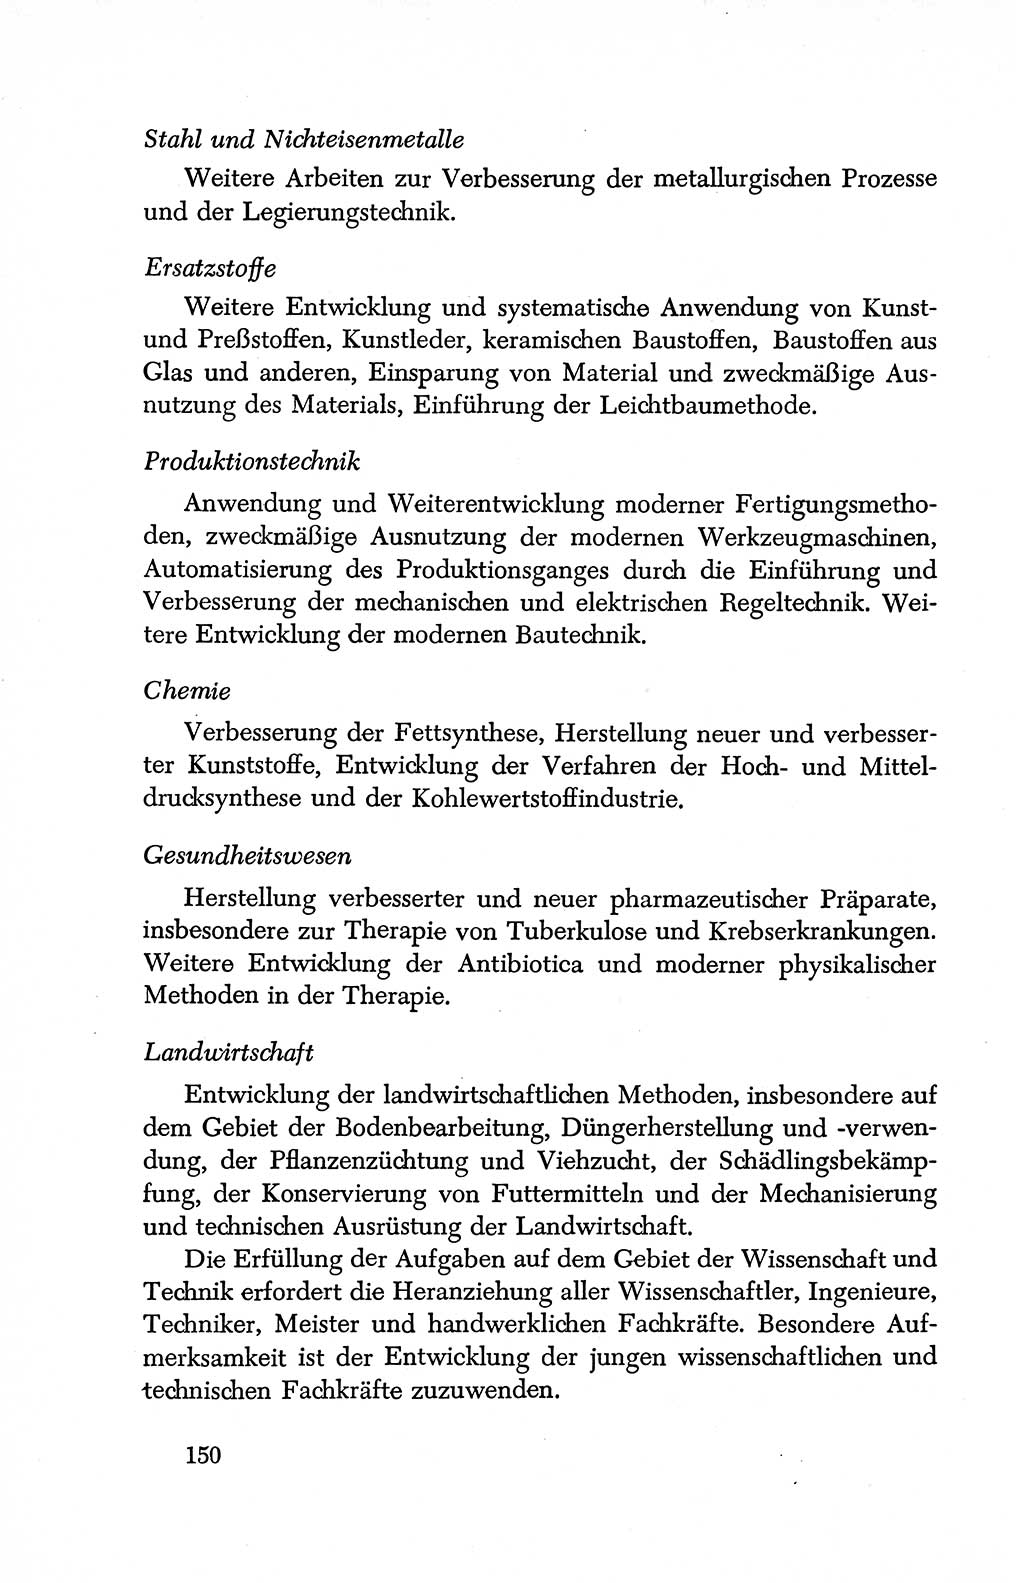 Dokumente der Sozialistischen Einheitspartei Deutschlands (SED) [Deutsche Demokratische Republik (DDR)] 1950-1952, Seite 150 (Dok. SED DDR 1950-1952, S. 150)